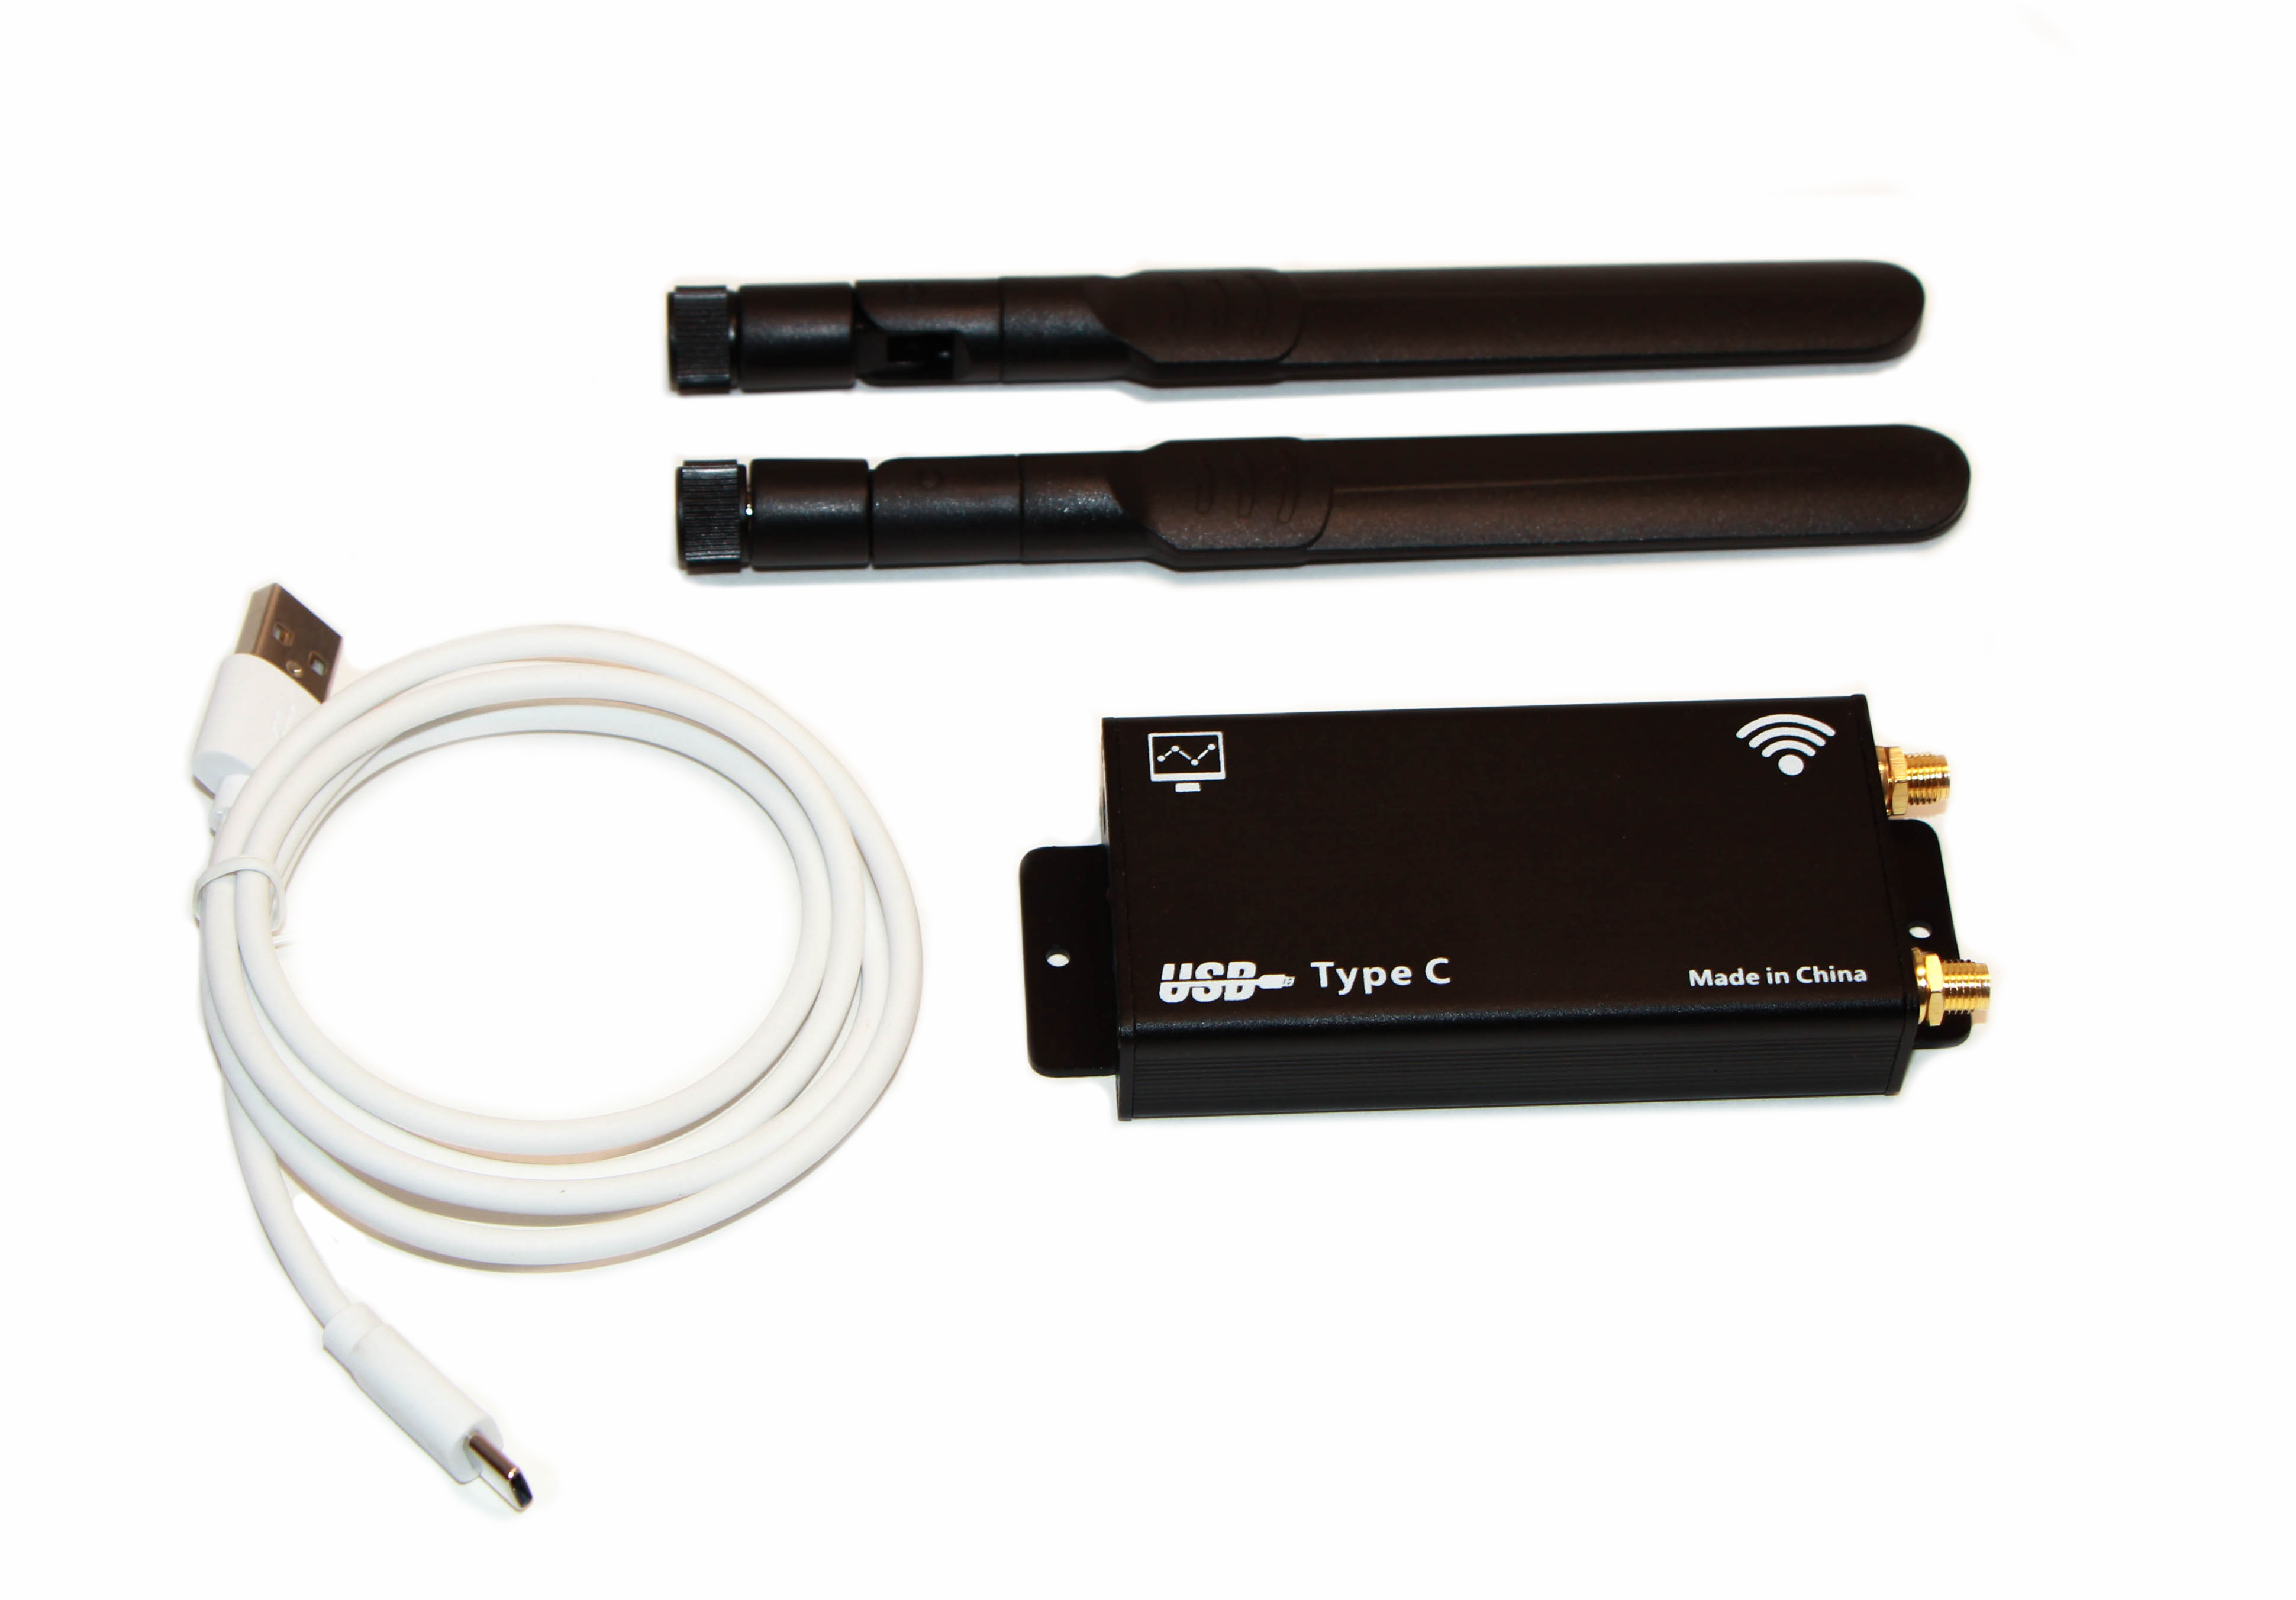 Детальное изображение товара "Адаптер USB Box для Mini PCI-e модемов" из каталога оборудования Антенна76